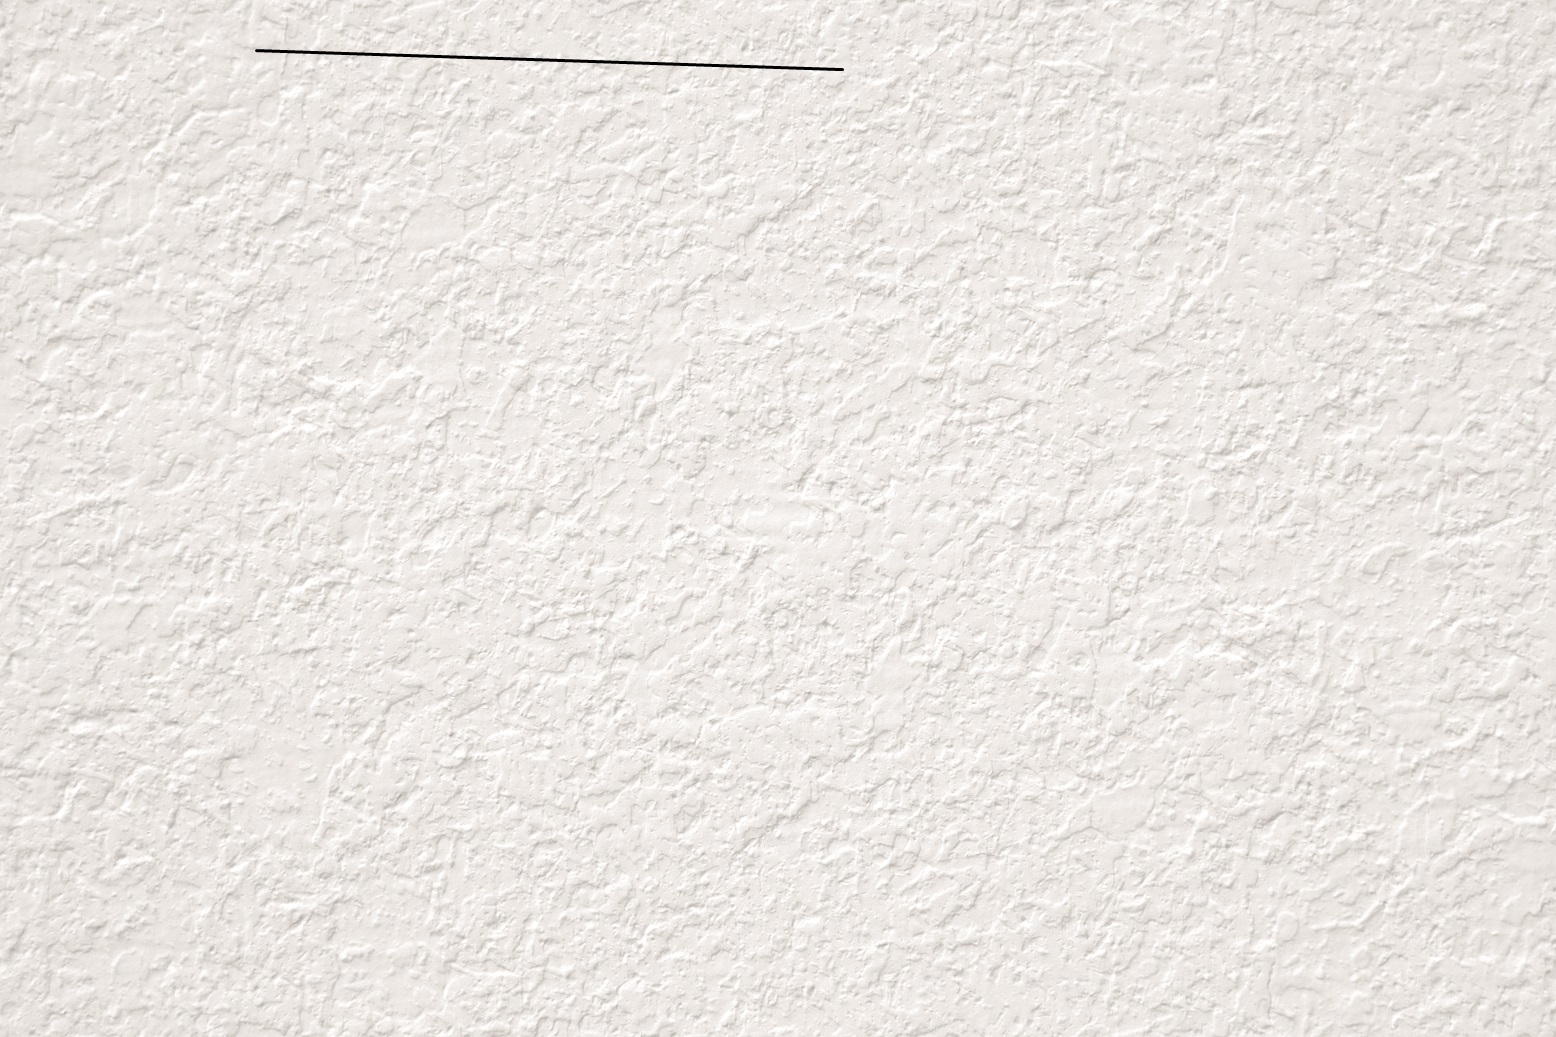 Alpina Premium Fassadenfarbe - Weiß 2,5 Liter, matt